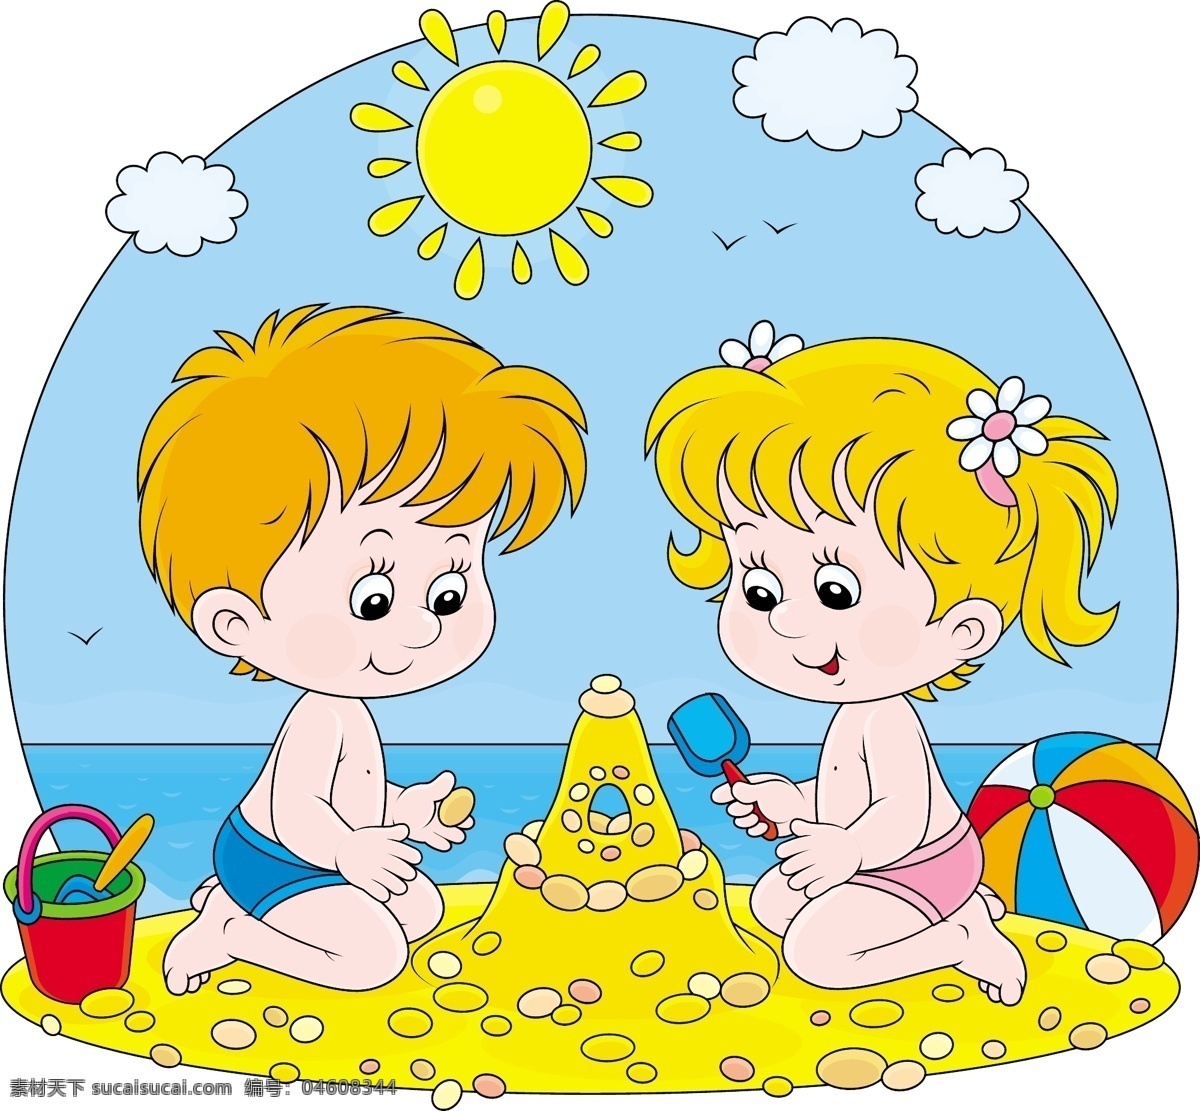 卡通 沙滩 儿童 背景 矢量 小孩 玩沙 太阳 游戏 桶 铲子 皮球 云朵 小女孩 小男孩 海边 海鸥 插画 手绘 儿童节 矢量人物